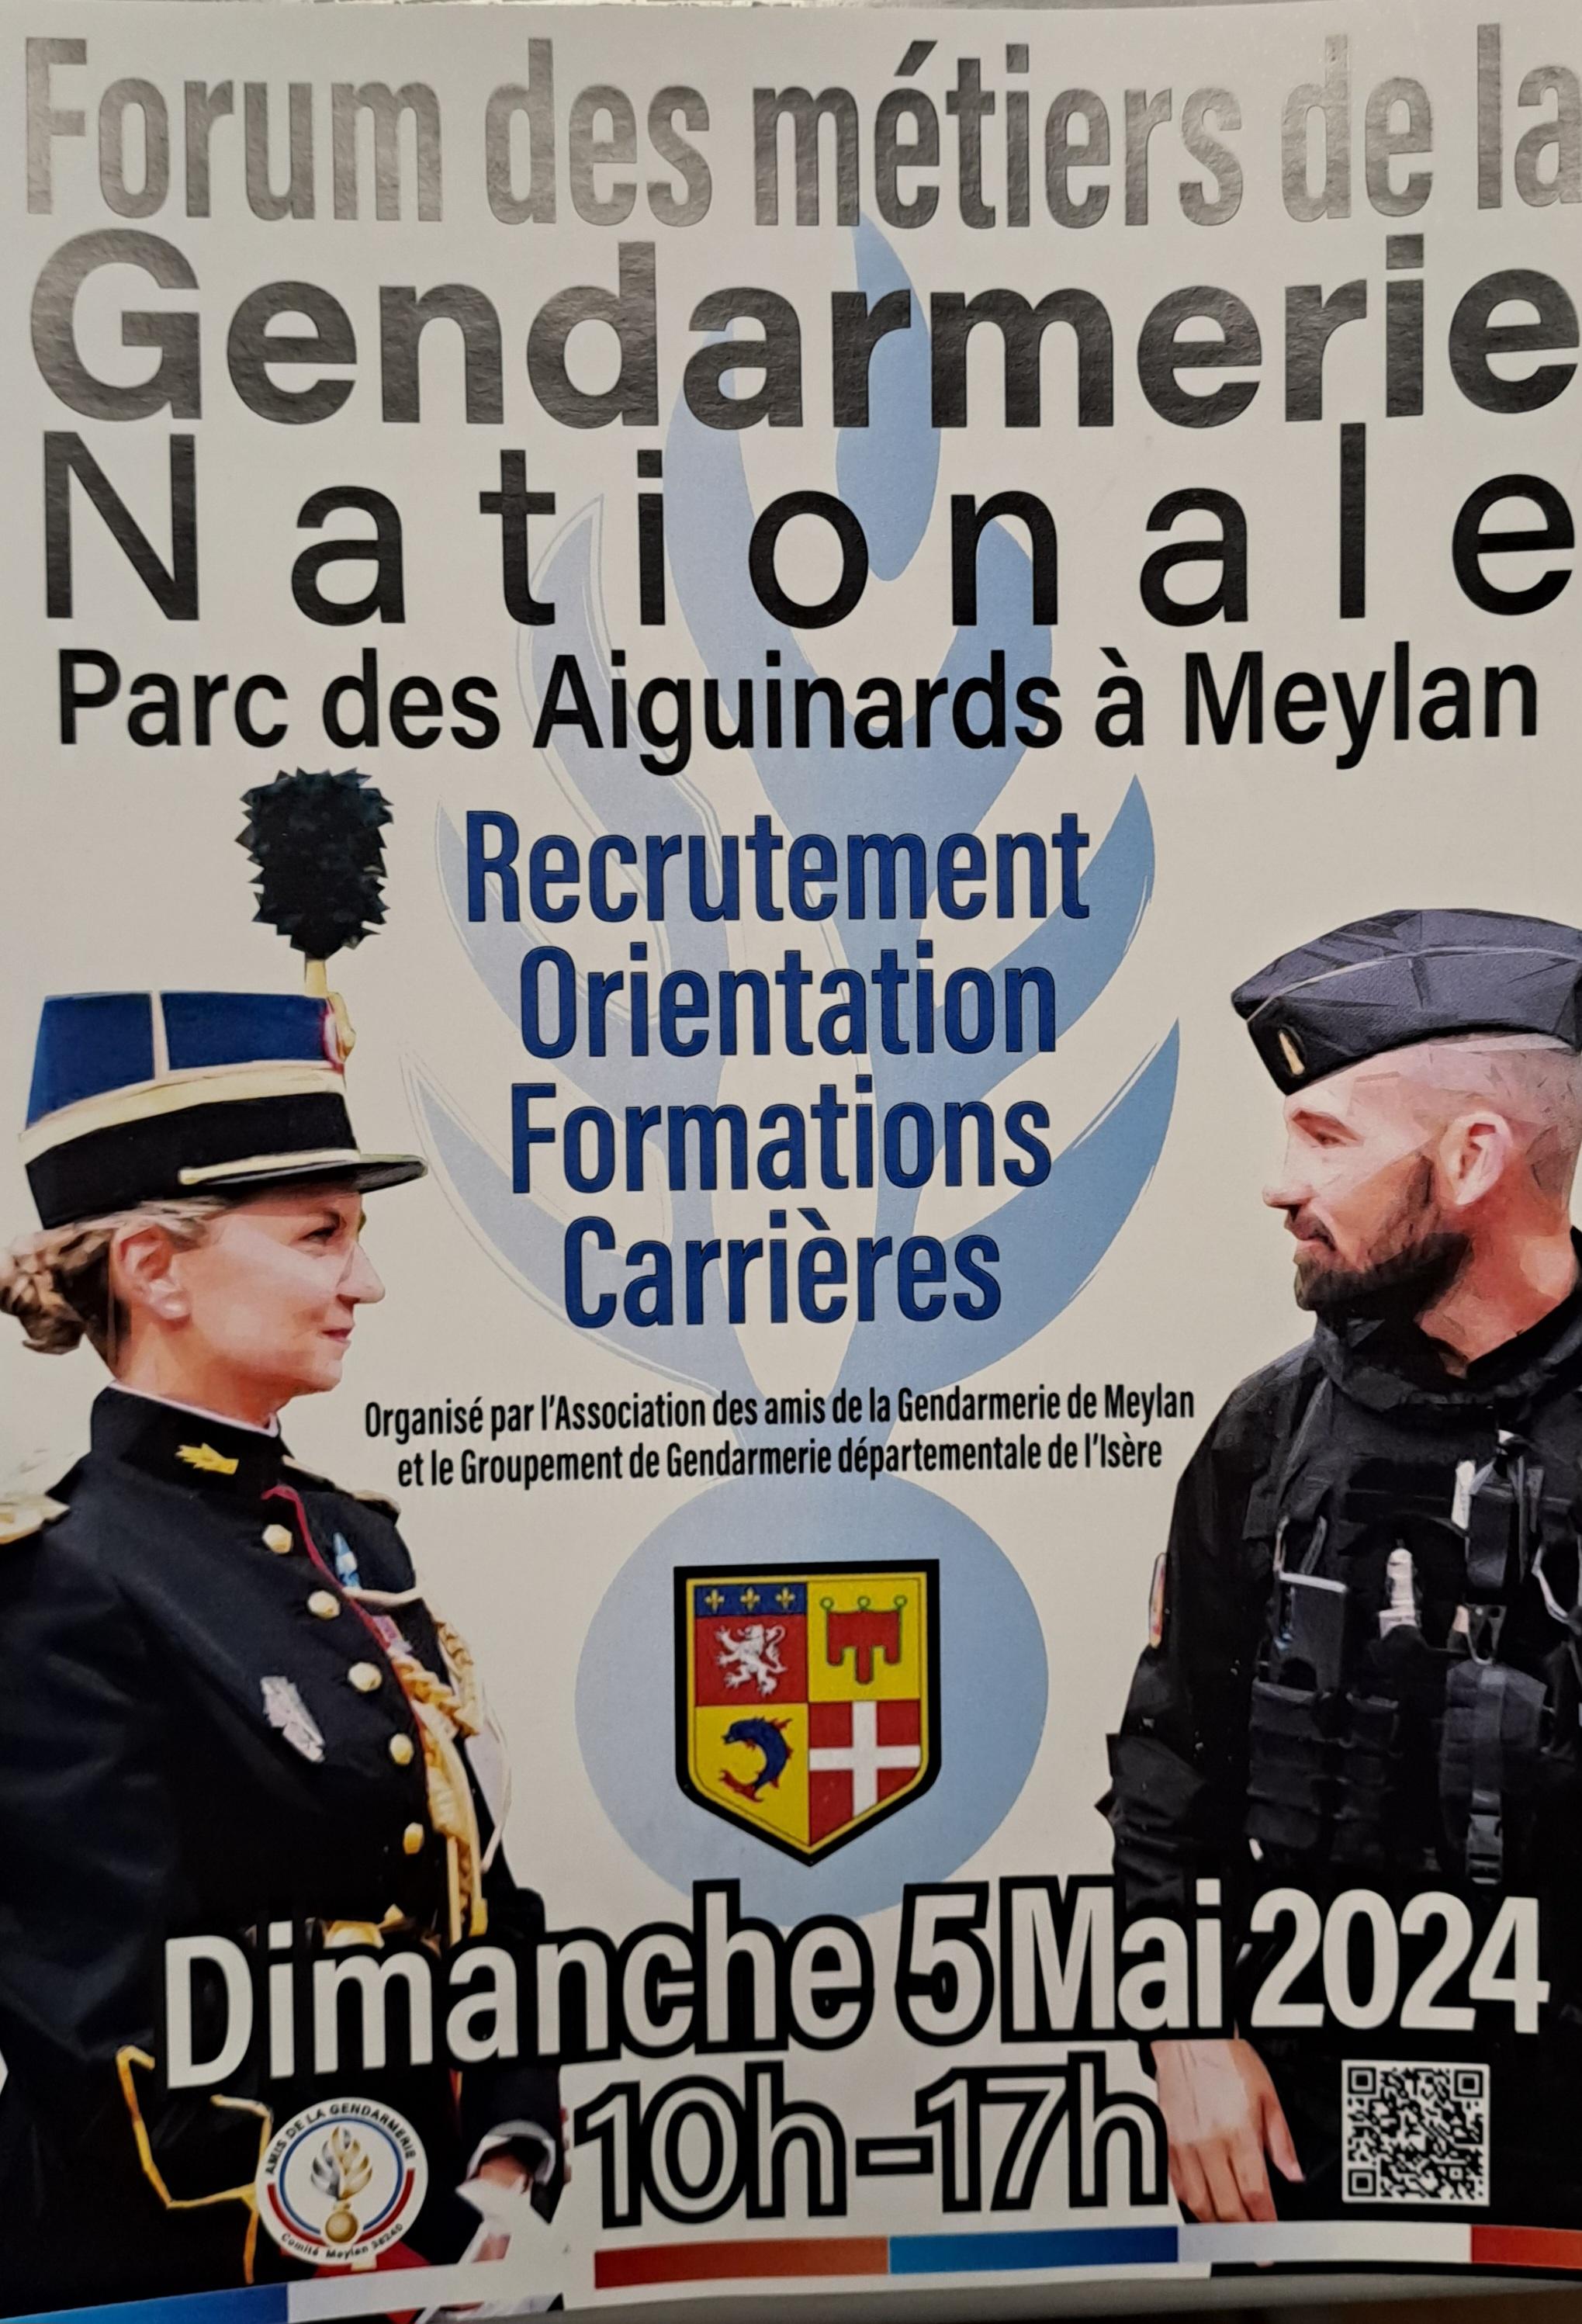 Image de couverture - FORUM DES MÉTIERS DE LA GENDARMERIE NATIONALE DIMANCHE 5 MAI